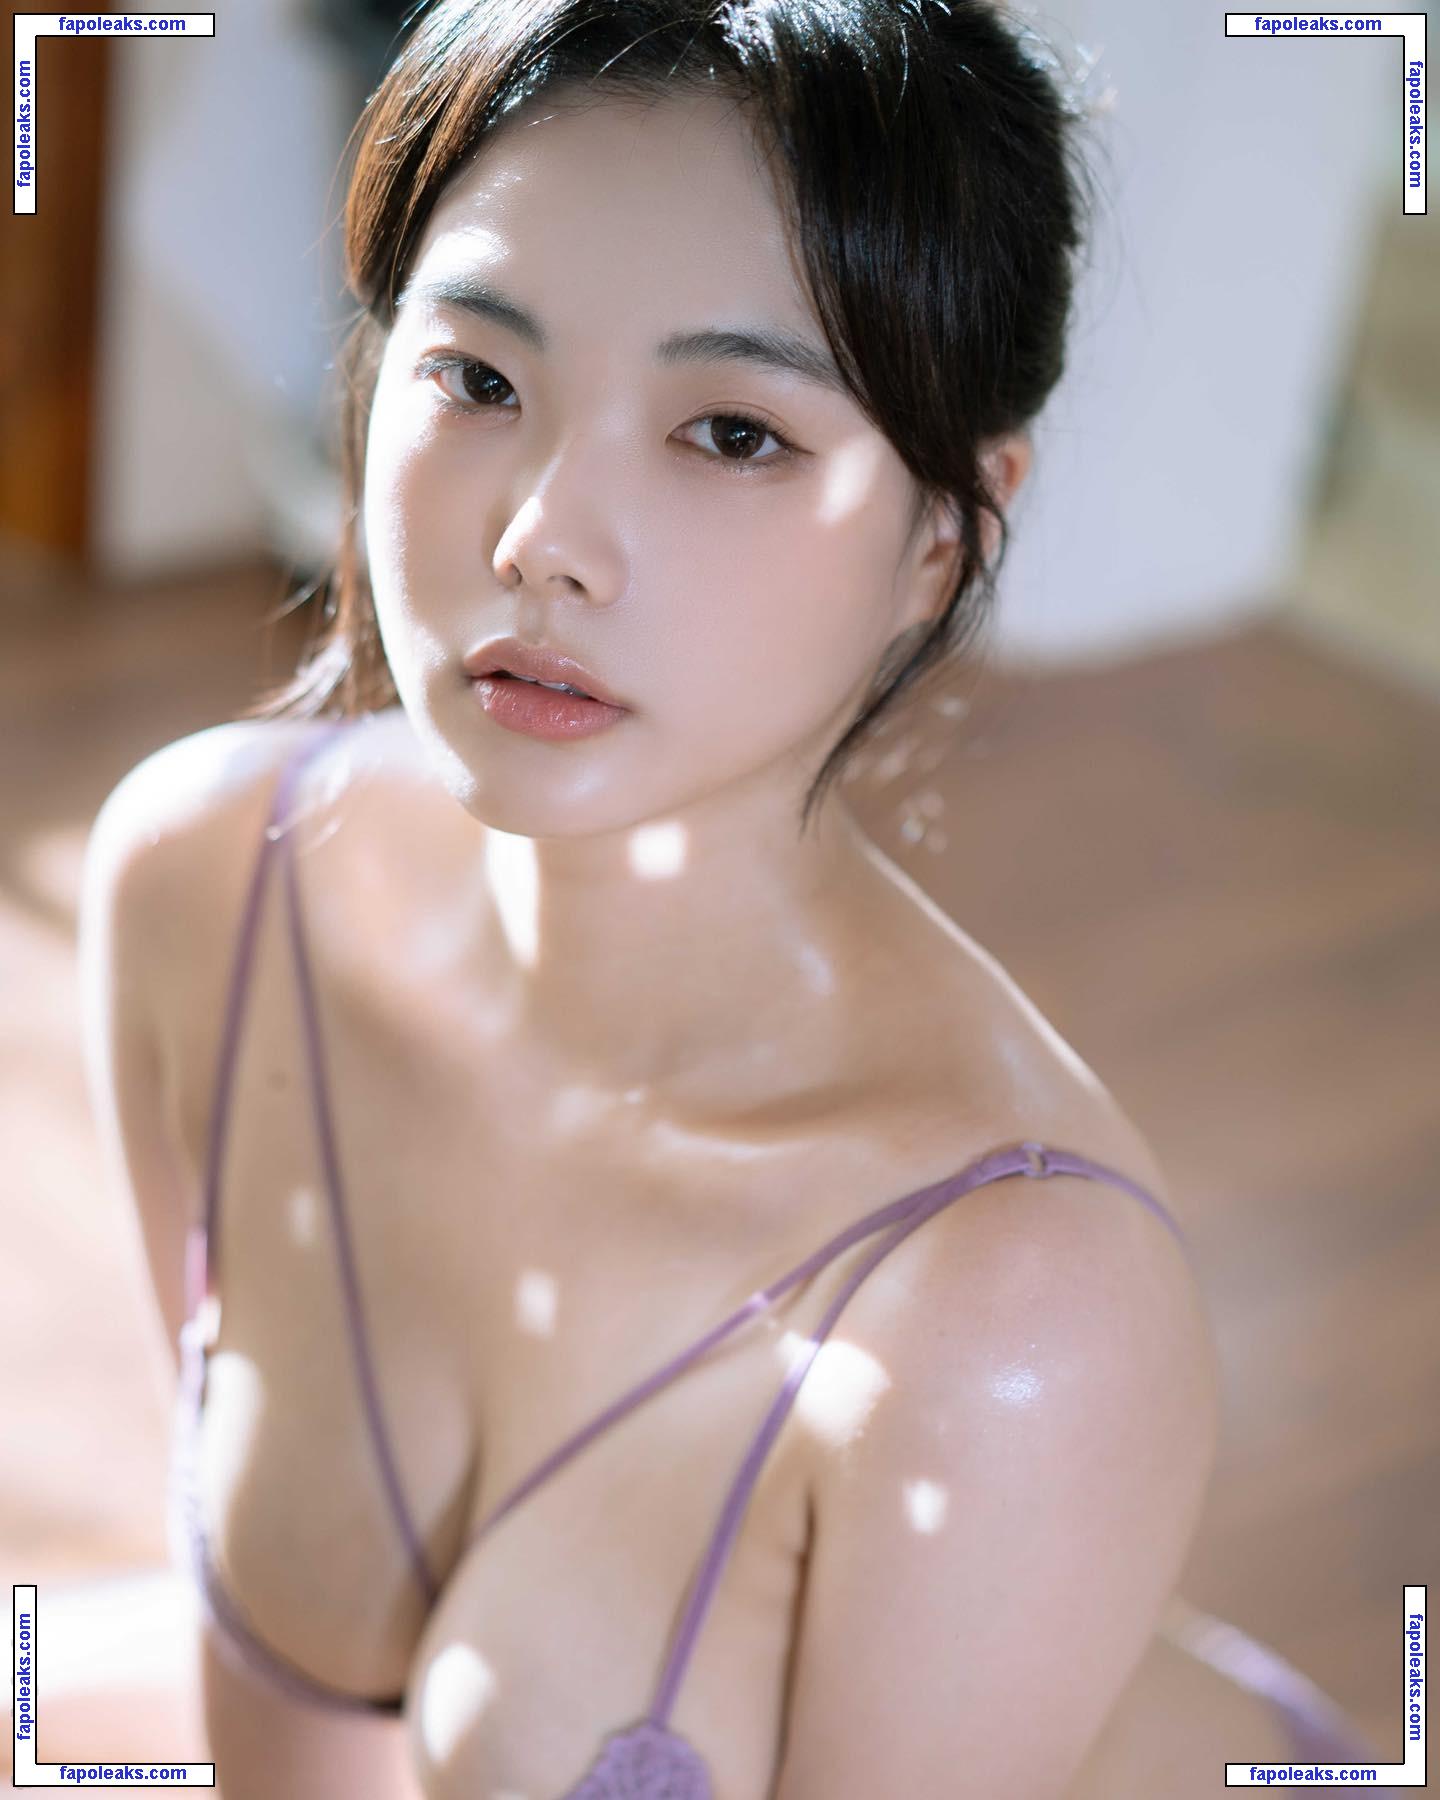 Roah Leehee / 2roo_aa nude photo #0001 from OnlyFans